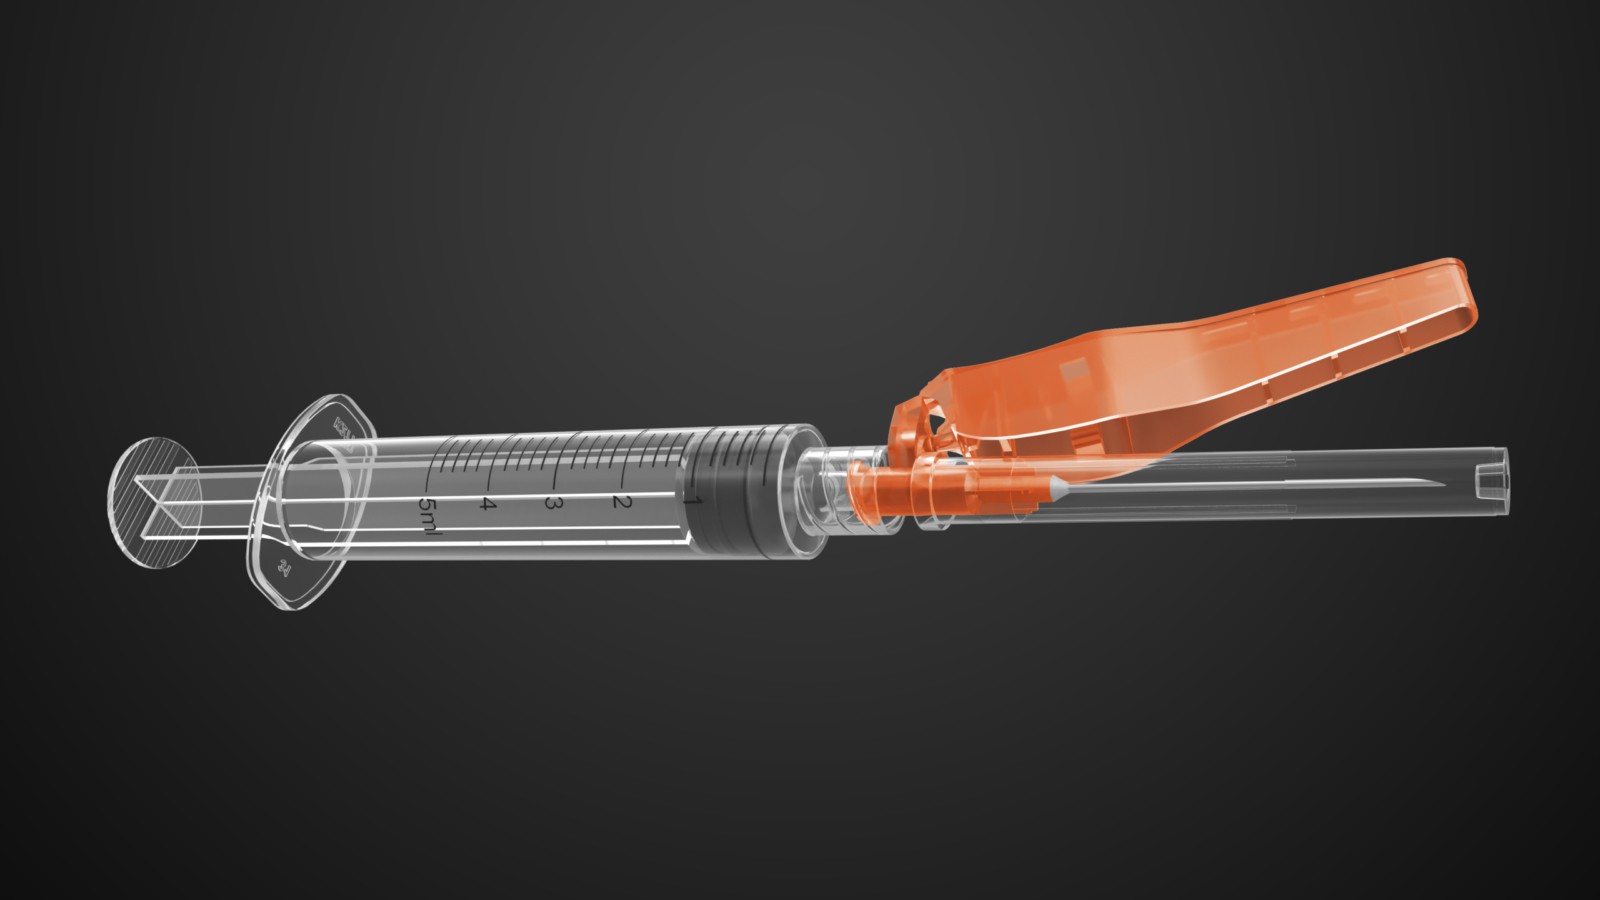 syringe details on medical device 3d product rendering